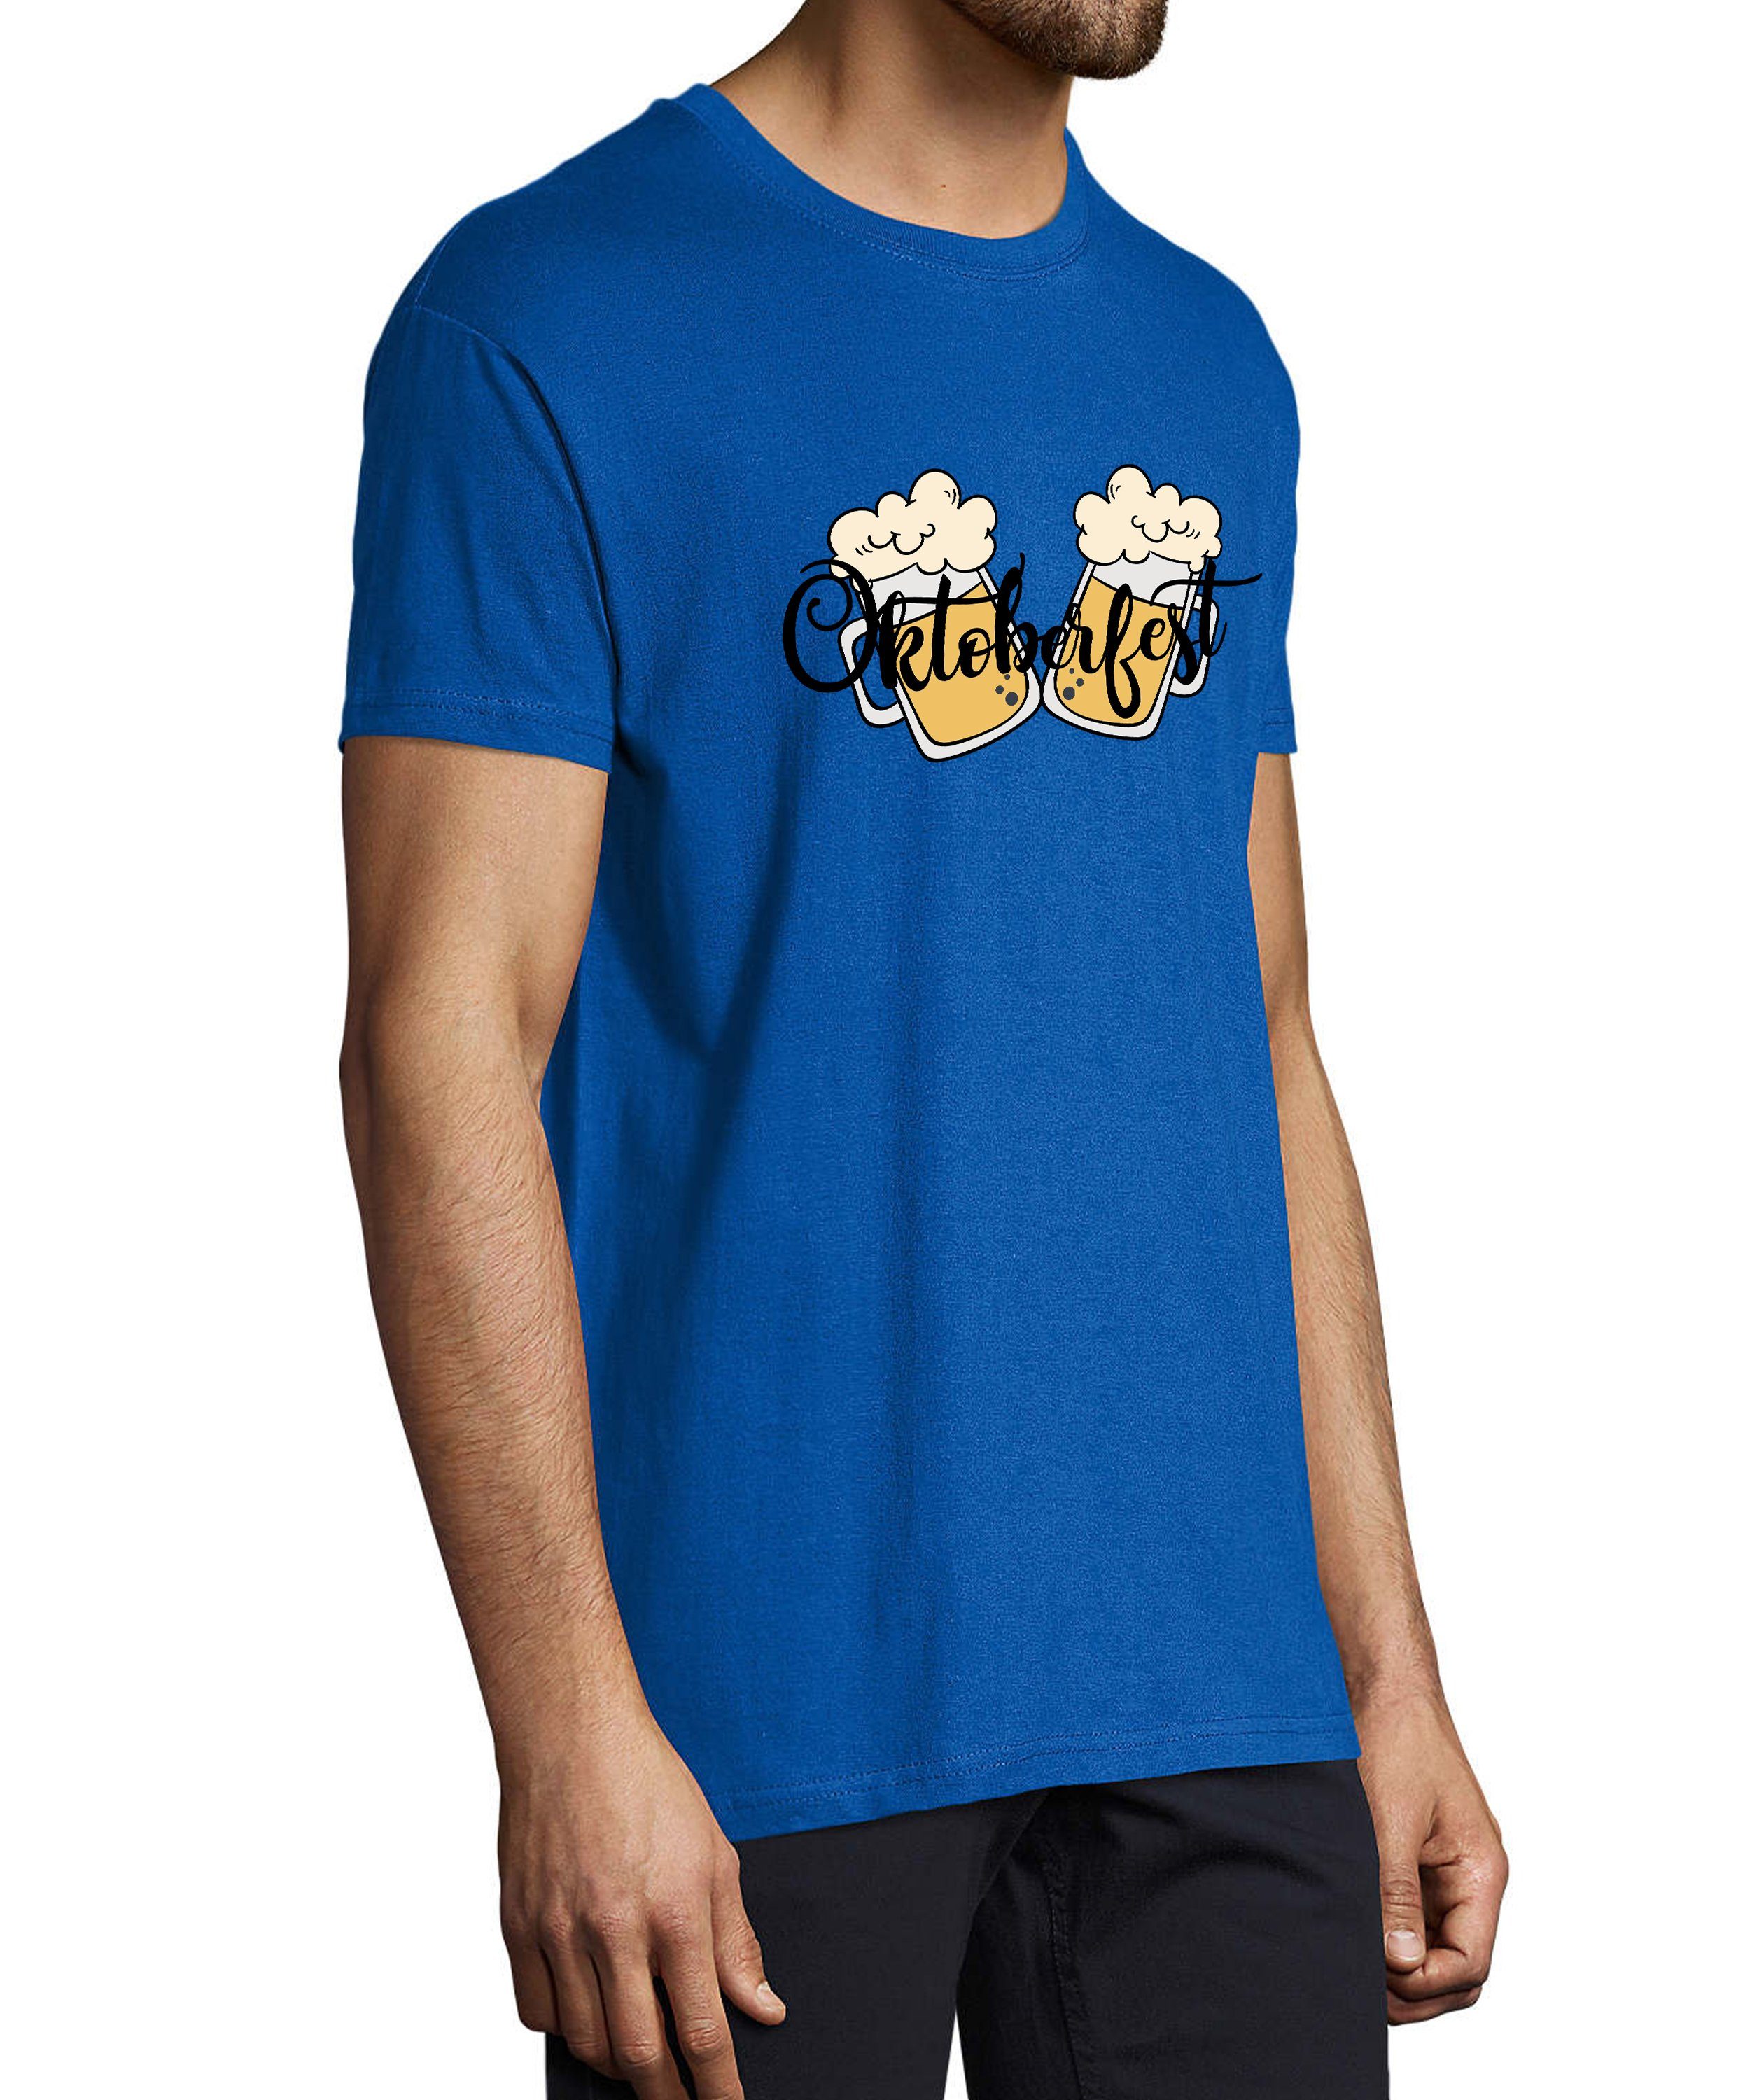 MyDesign24 T-Shirt Herren Party Shirt Trinkshirt Fit, blau Oktoberfest Regular T-Shirt Biergläser mit Aufdruck royal i326 2 Baumwollshirt 